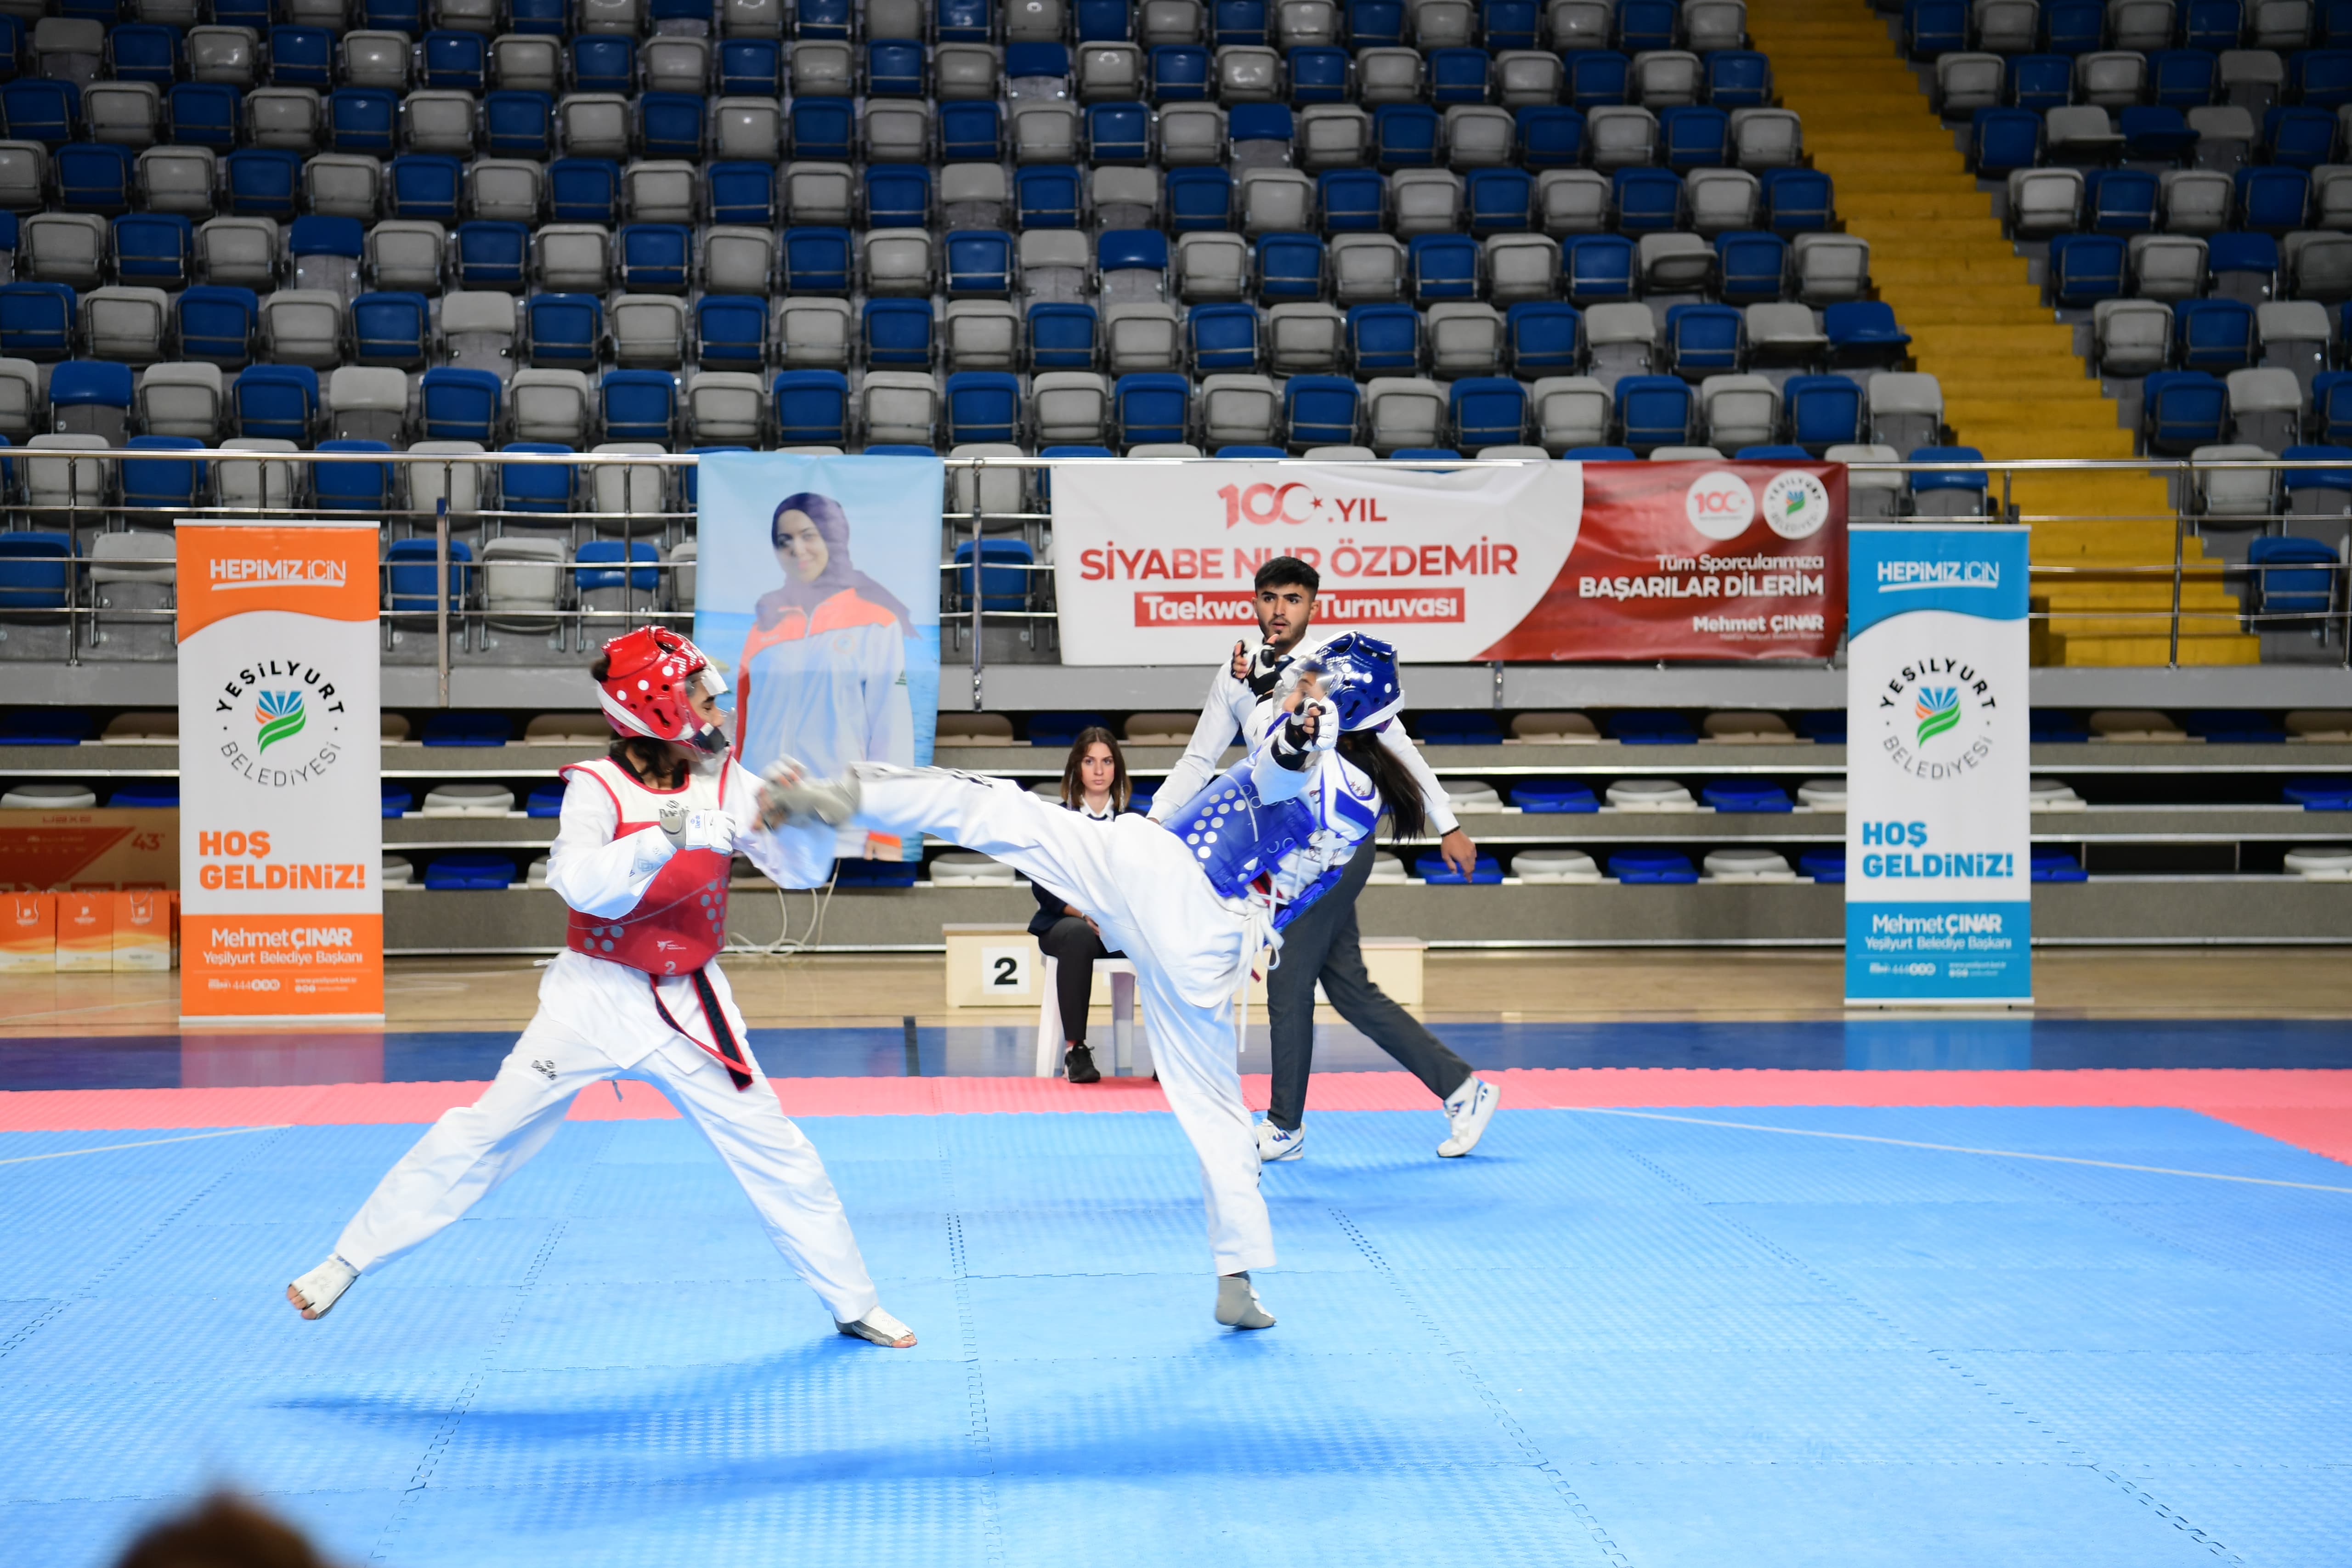 Siyabe Nur Özdemir Taekwondo Turnuvası Galeri